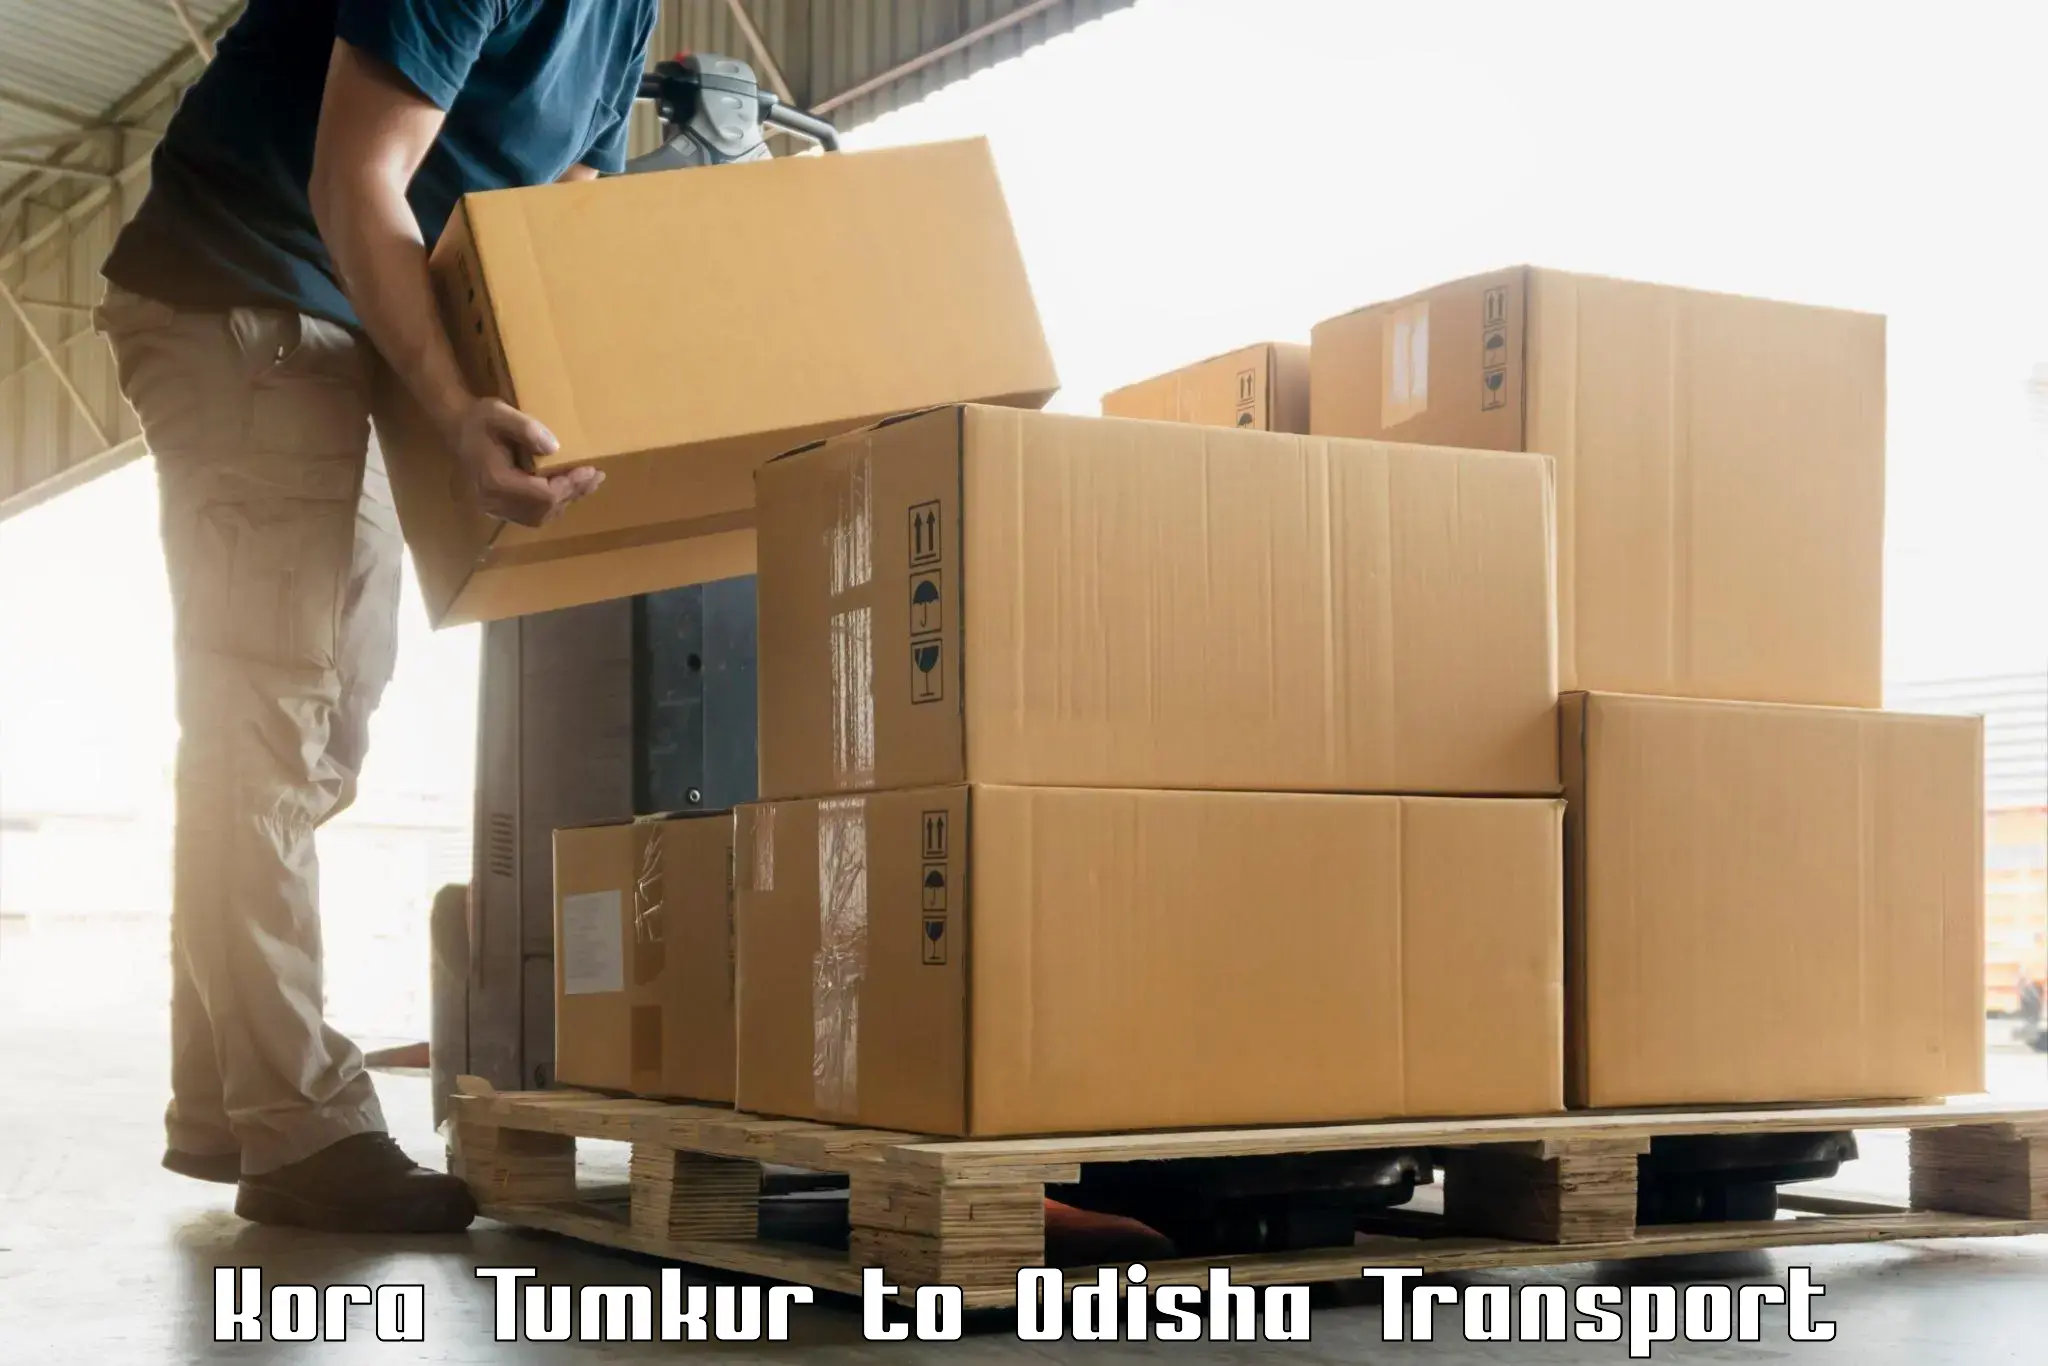 India truck logistics services Kora Tumkur to Muniguda